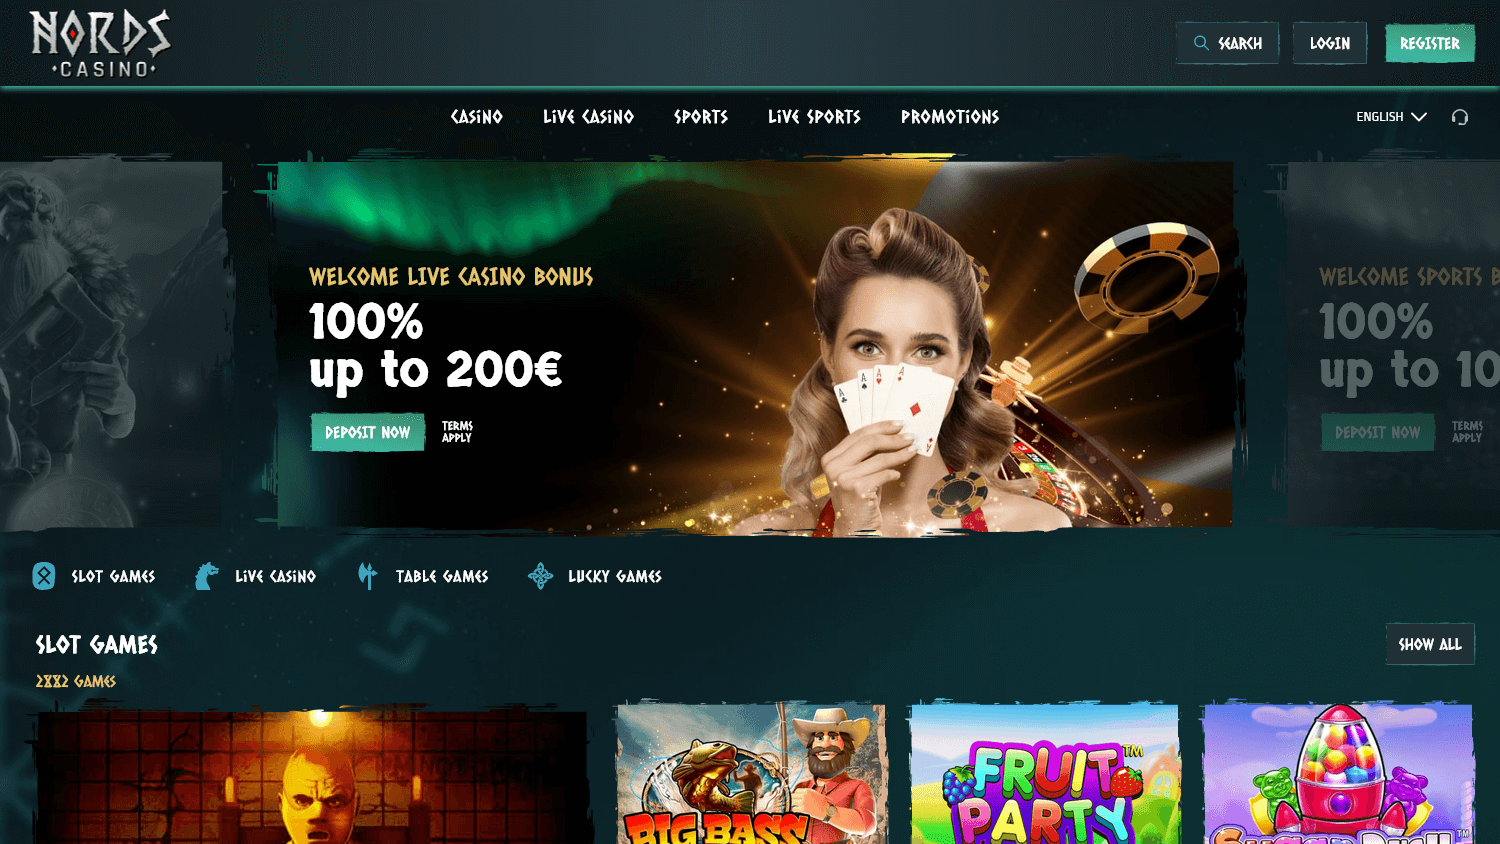 nords_casino_homepage_desktop